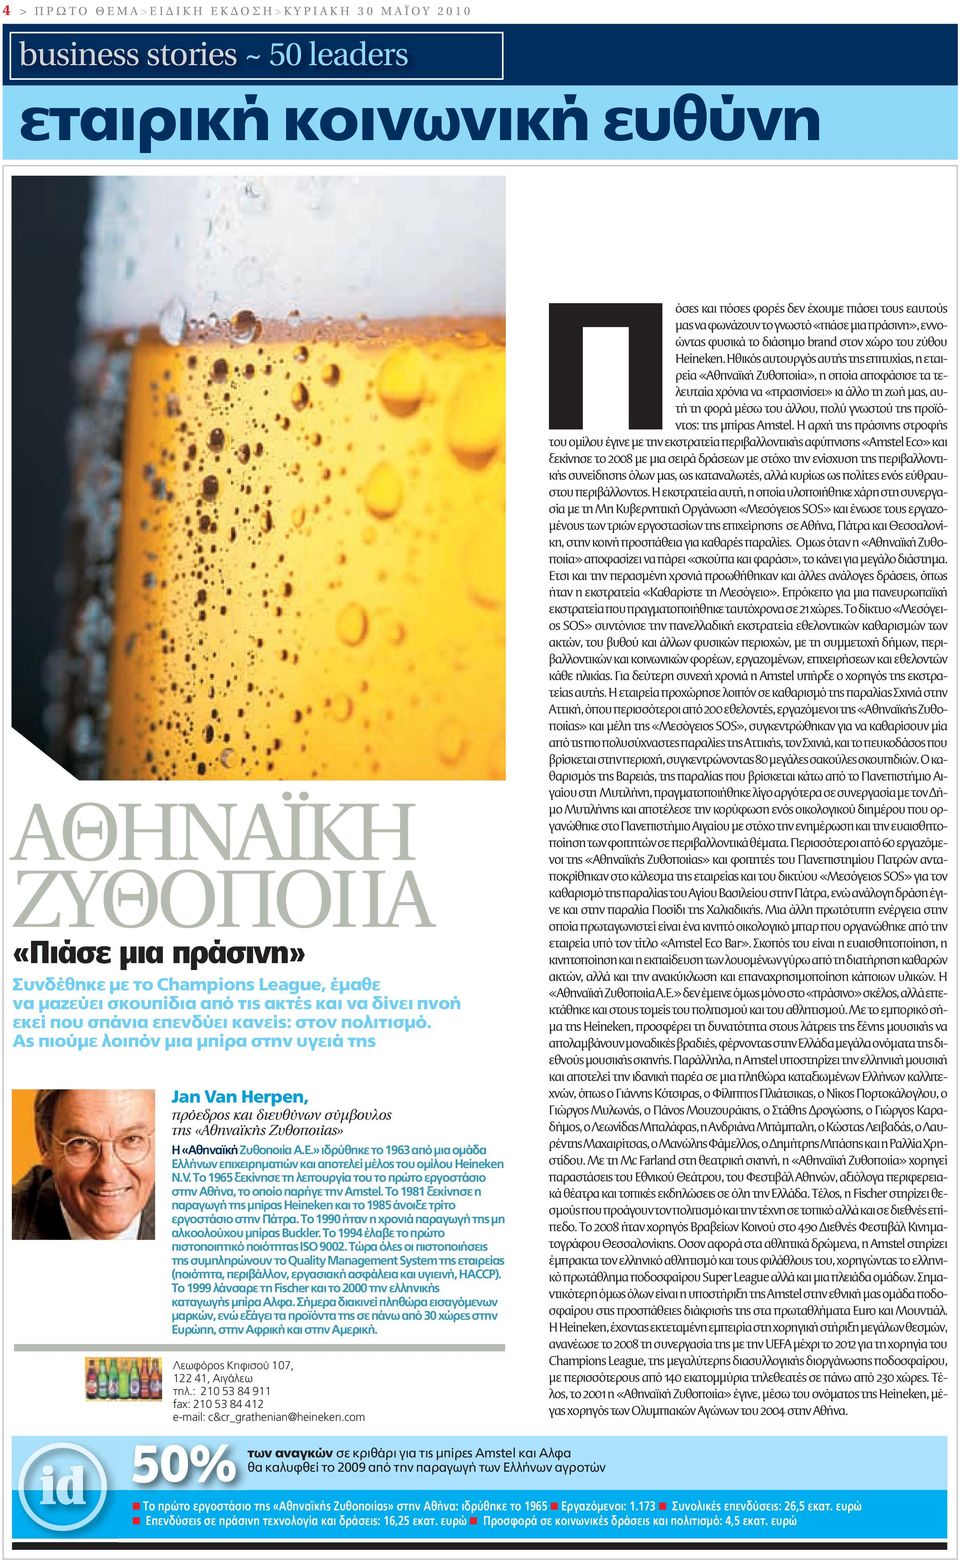 Ας πιούμε λοιπόν μια μπίρα στην υγειά της Jan Van Herpen, πρόεδρος και διευθύνων σύμβουλος της «Αθηναϊκής Ζυθοποιίας» Η «Αθηναϊκή Ζυθοποιία Α.Ε.